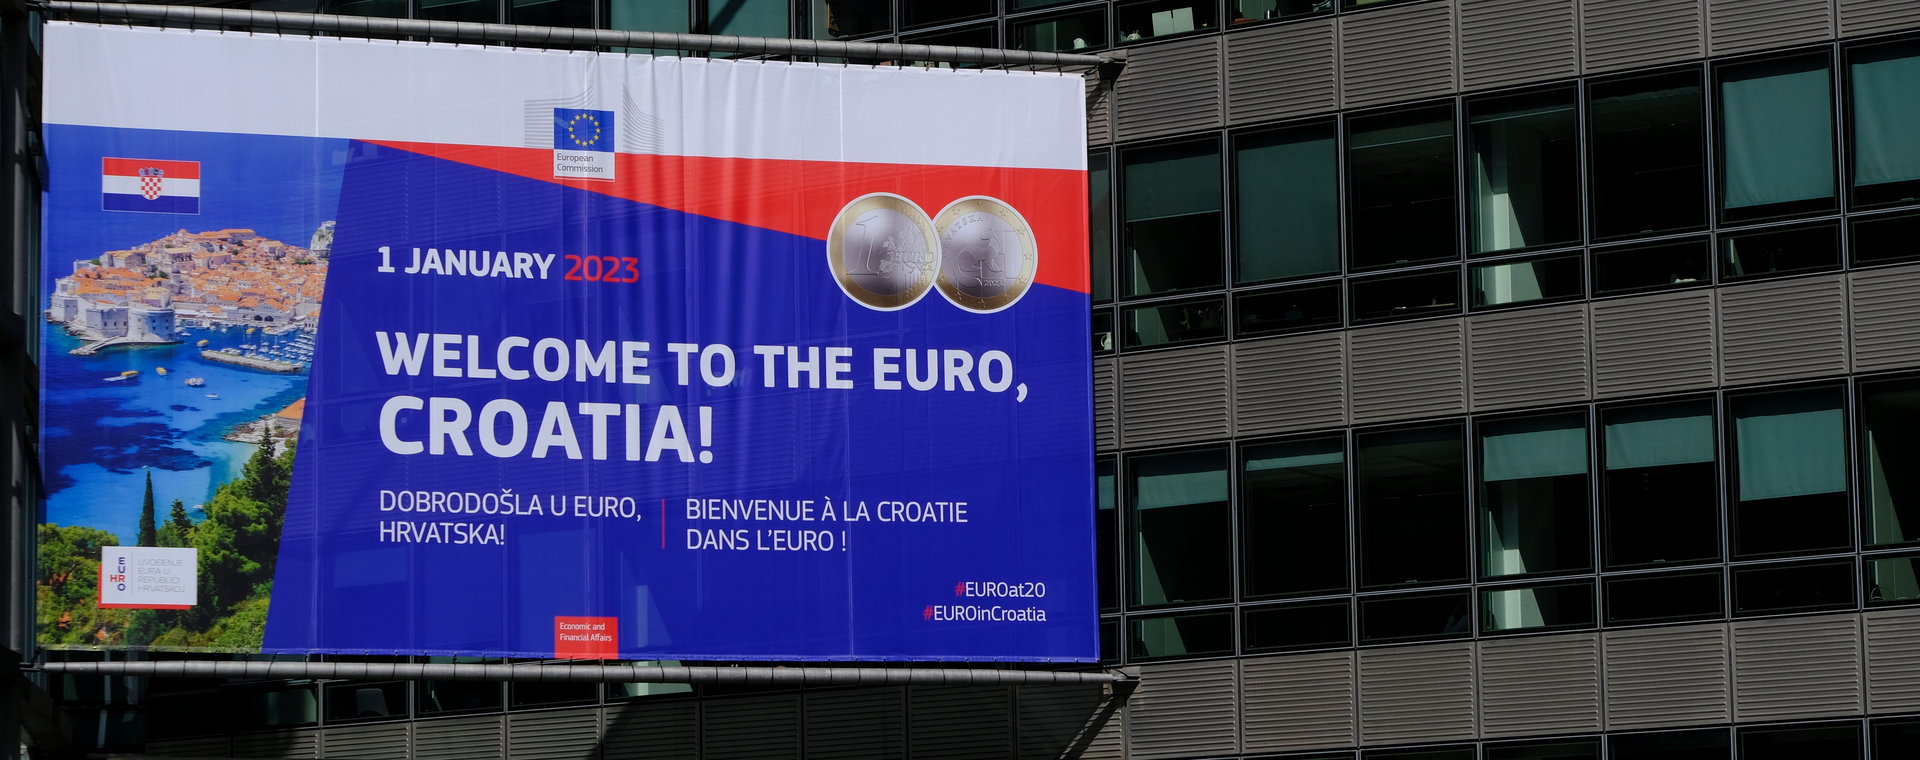 Chorwacja przyjęła euro. Czy pójdzie teraz drogą słowacką, czy bałtycką?